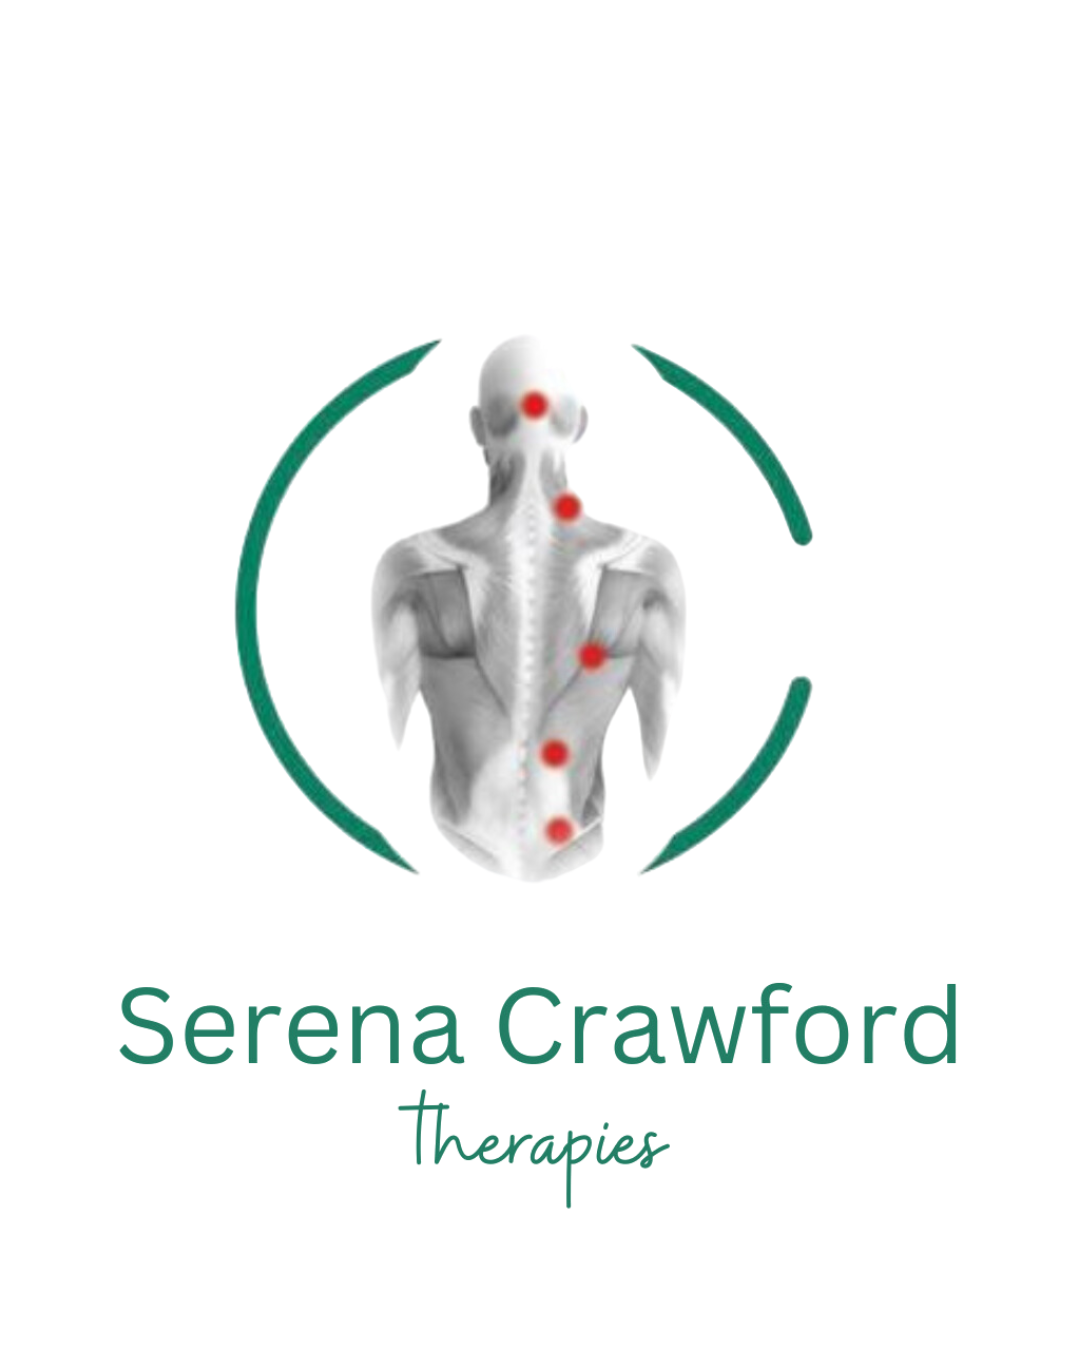 Serena Crawford Therapies